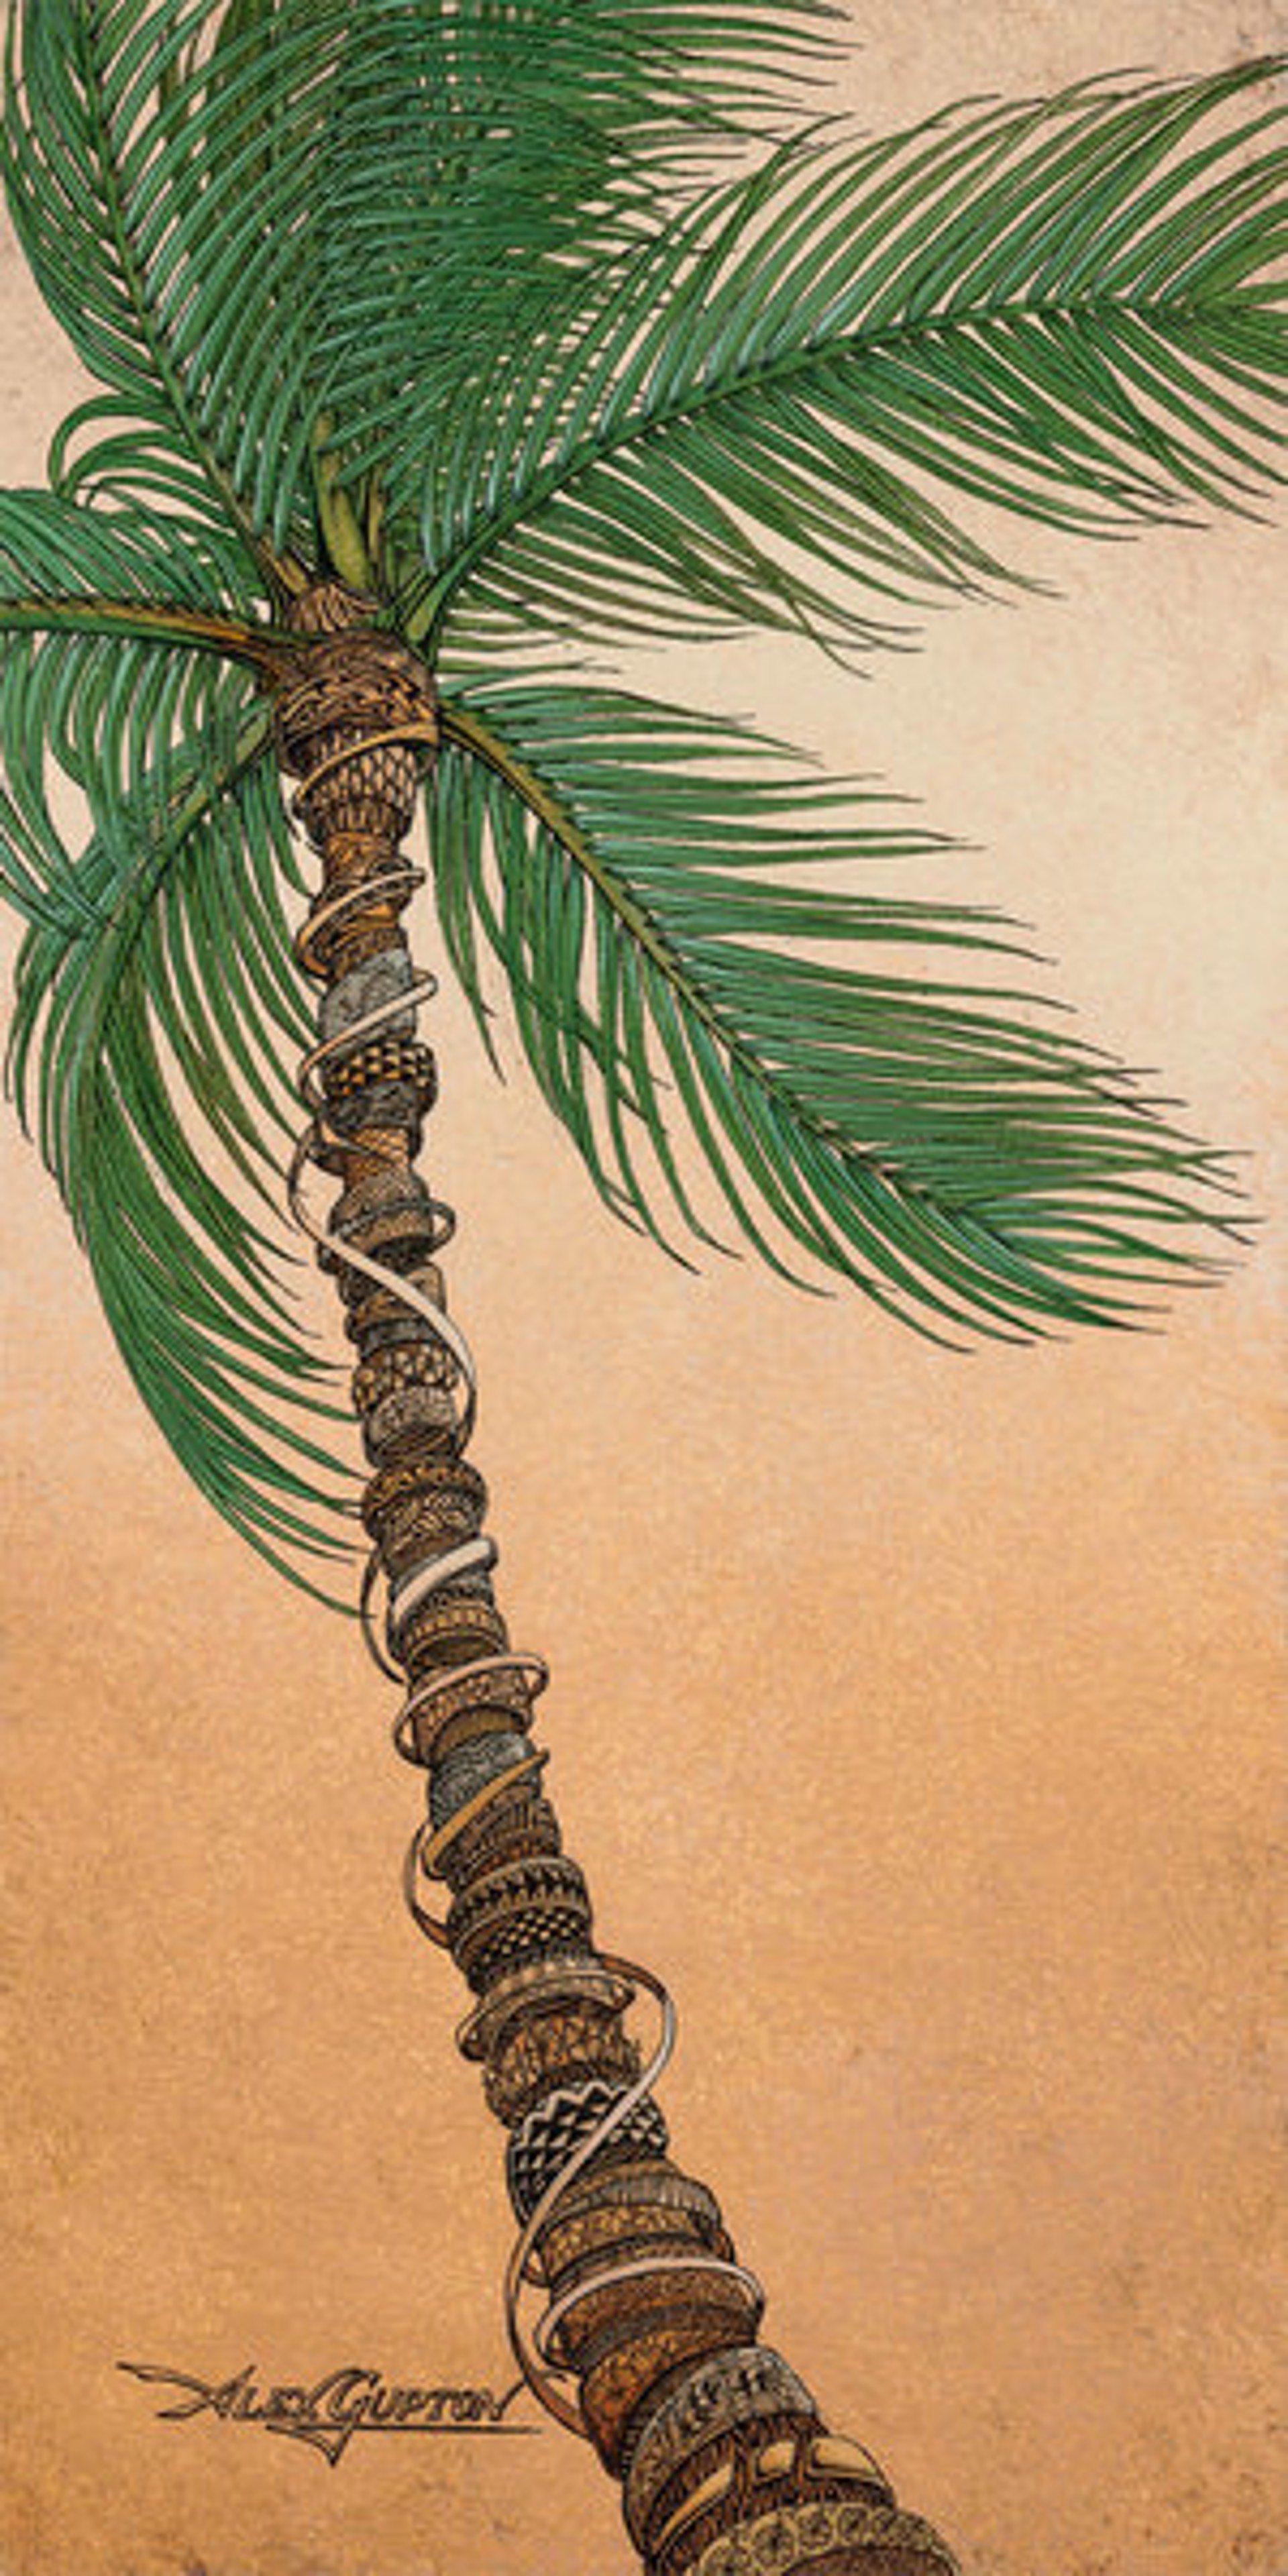 Palm by Alex Gupton